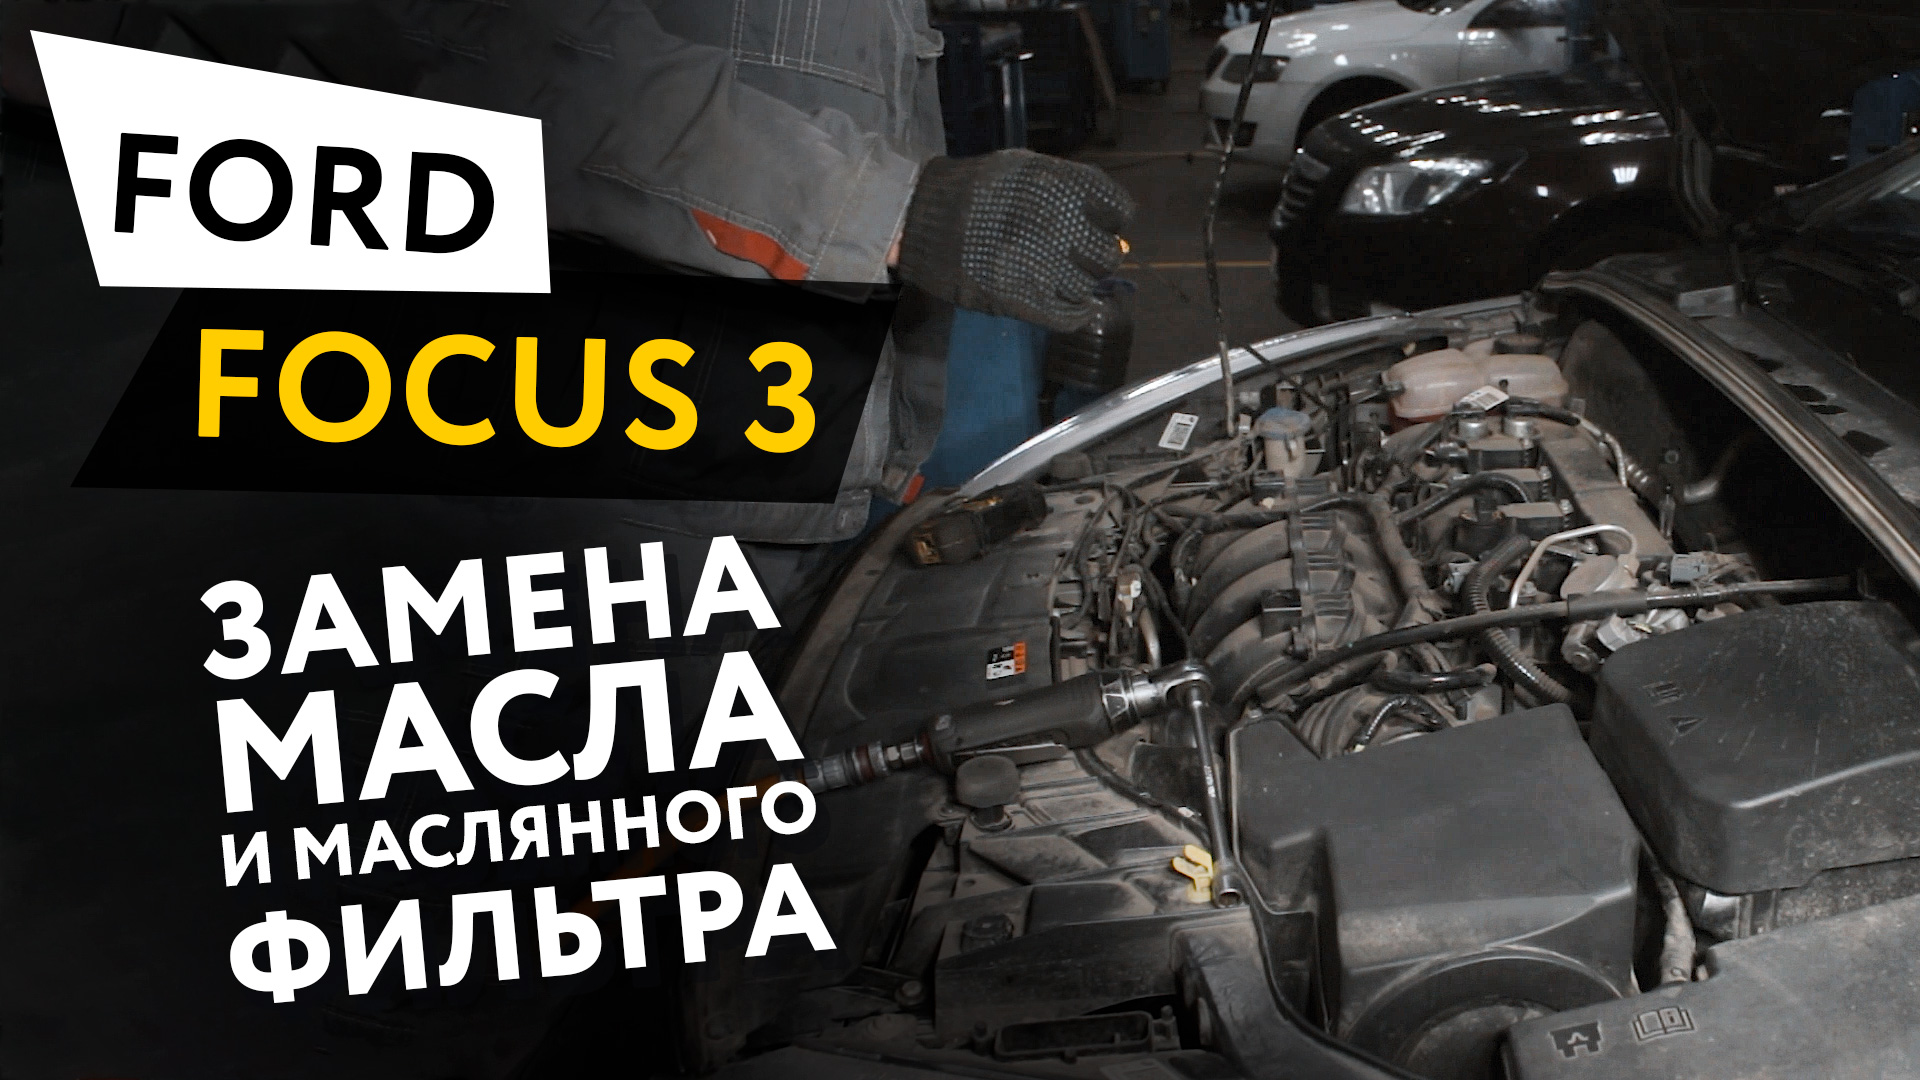 Замена масла и масляного фильтра в двигателе автомобиля Ford Focus 3 2.0